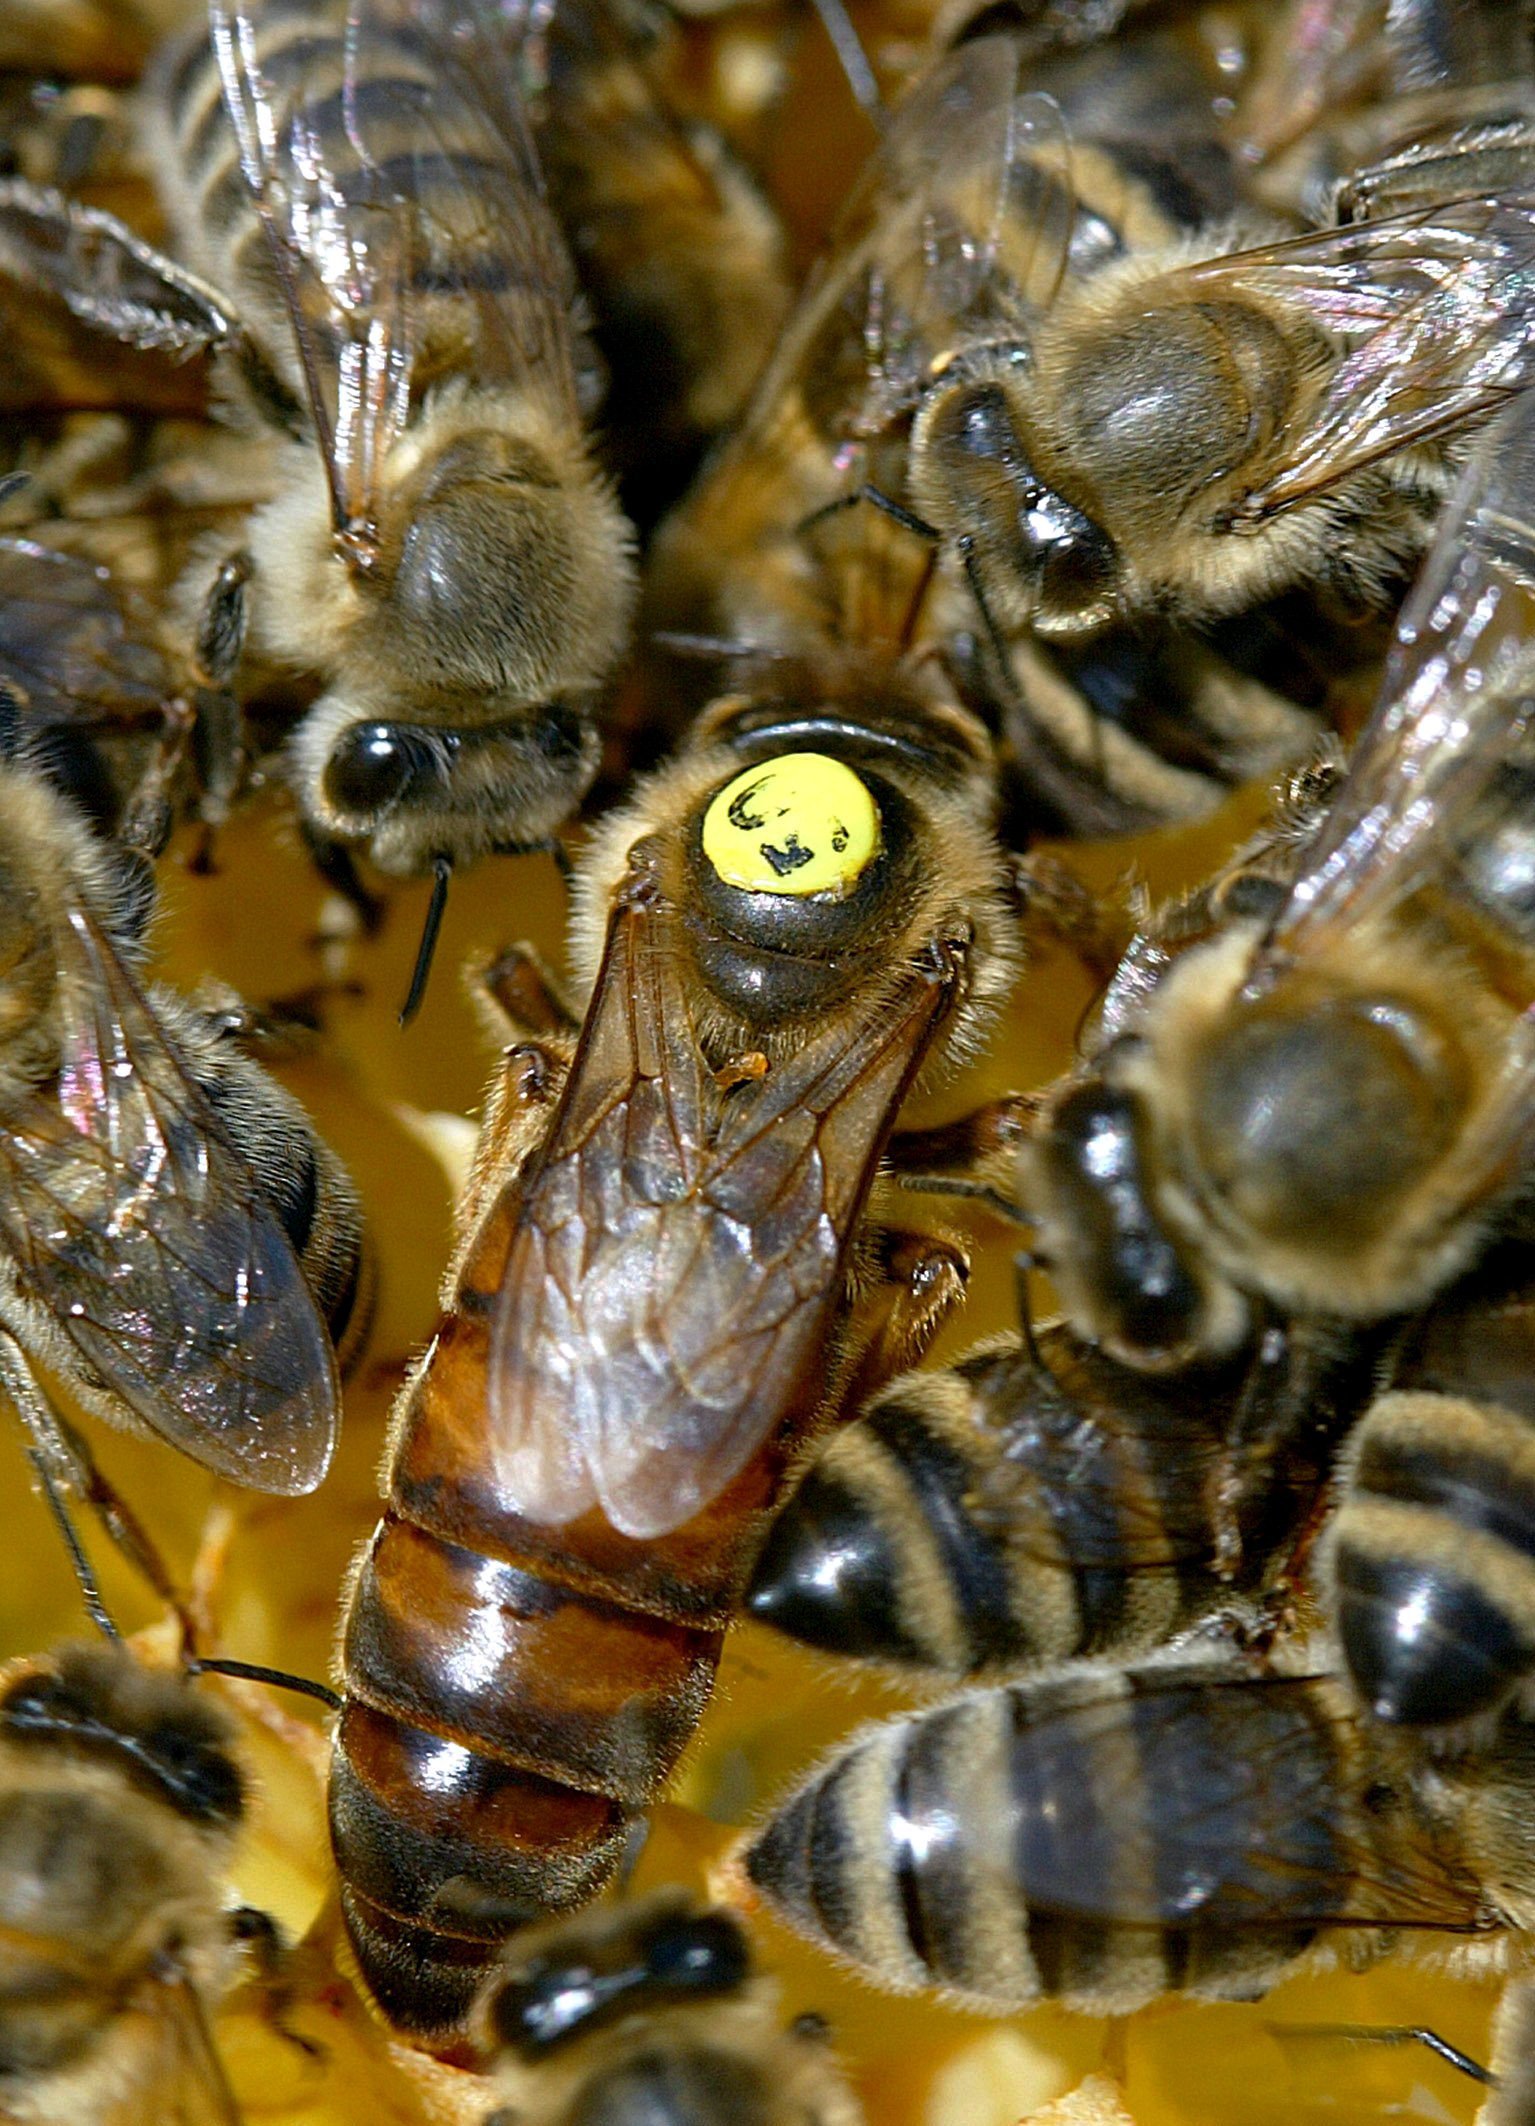 Sárga pöttyel jelölt méhkirálynő egy németországi kaptárban. Napi háromezer petét képes lerakni.